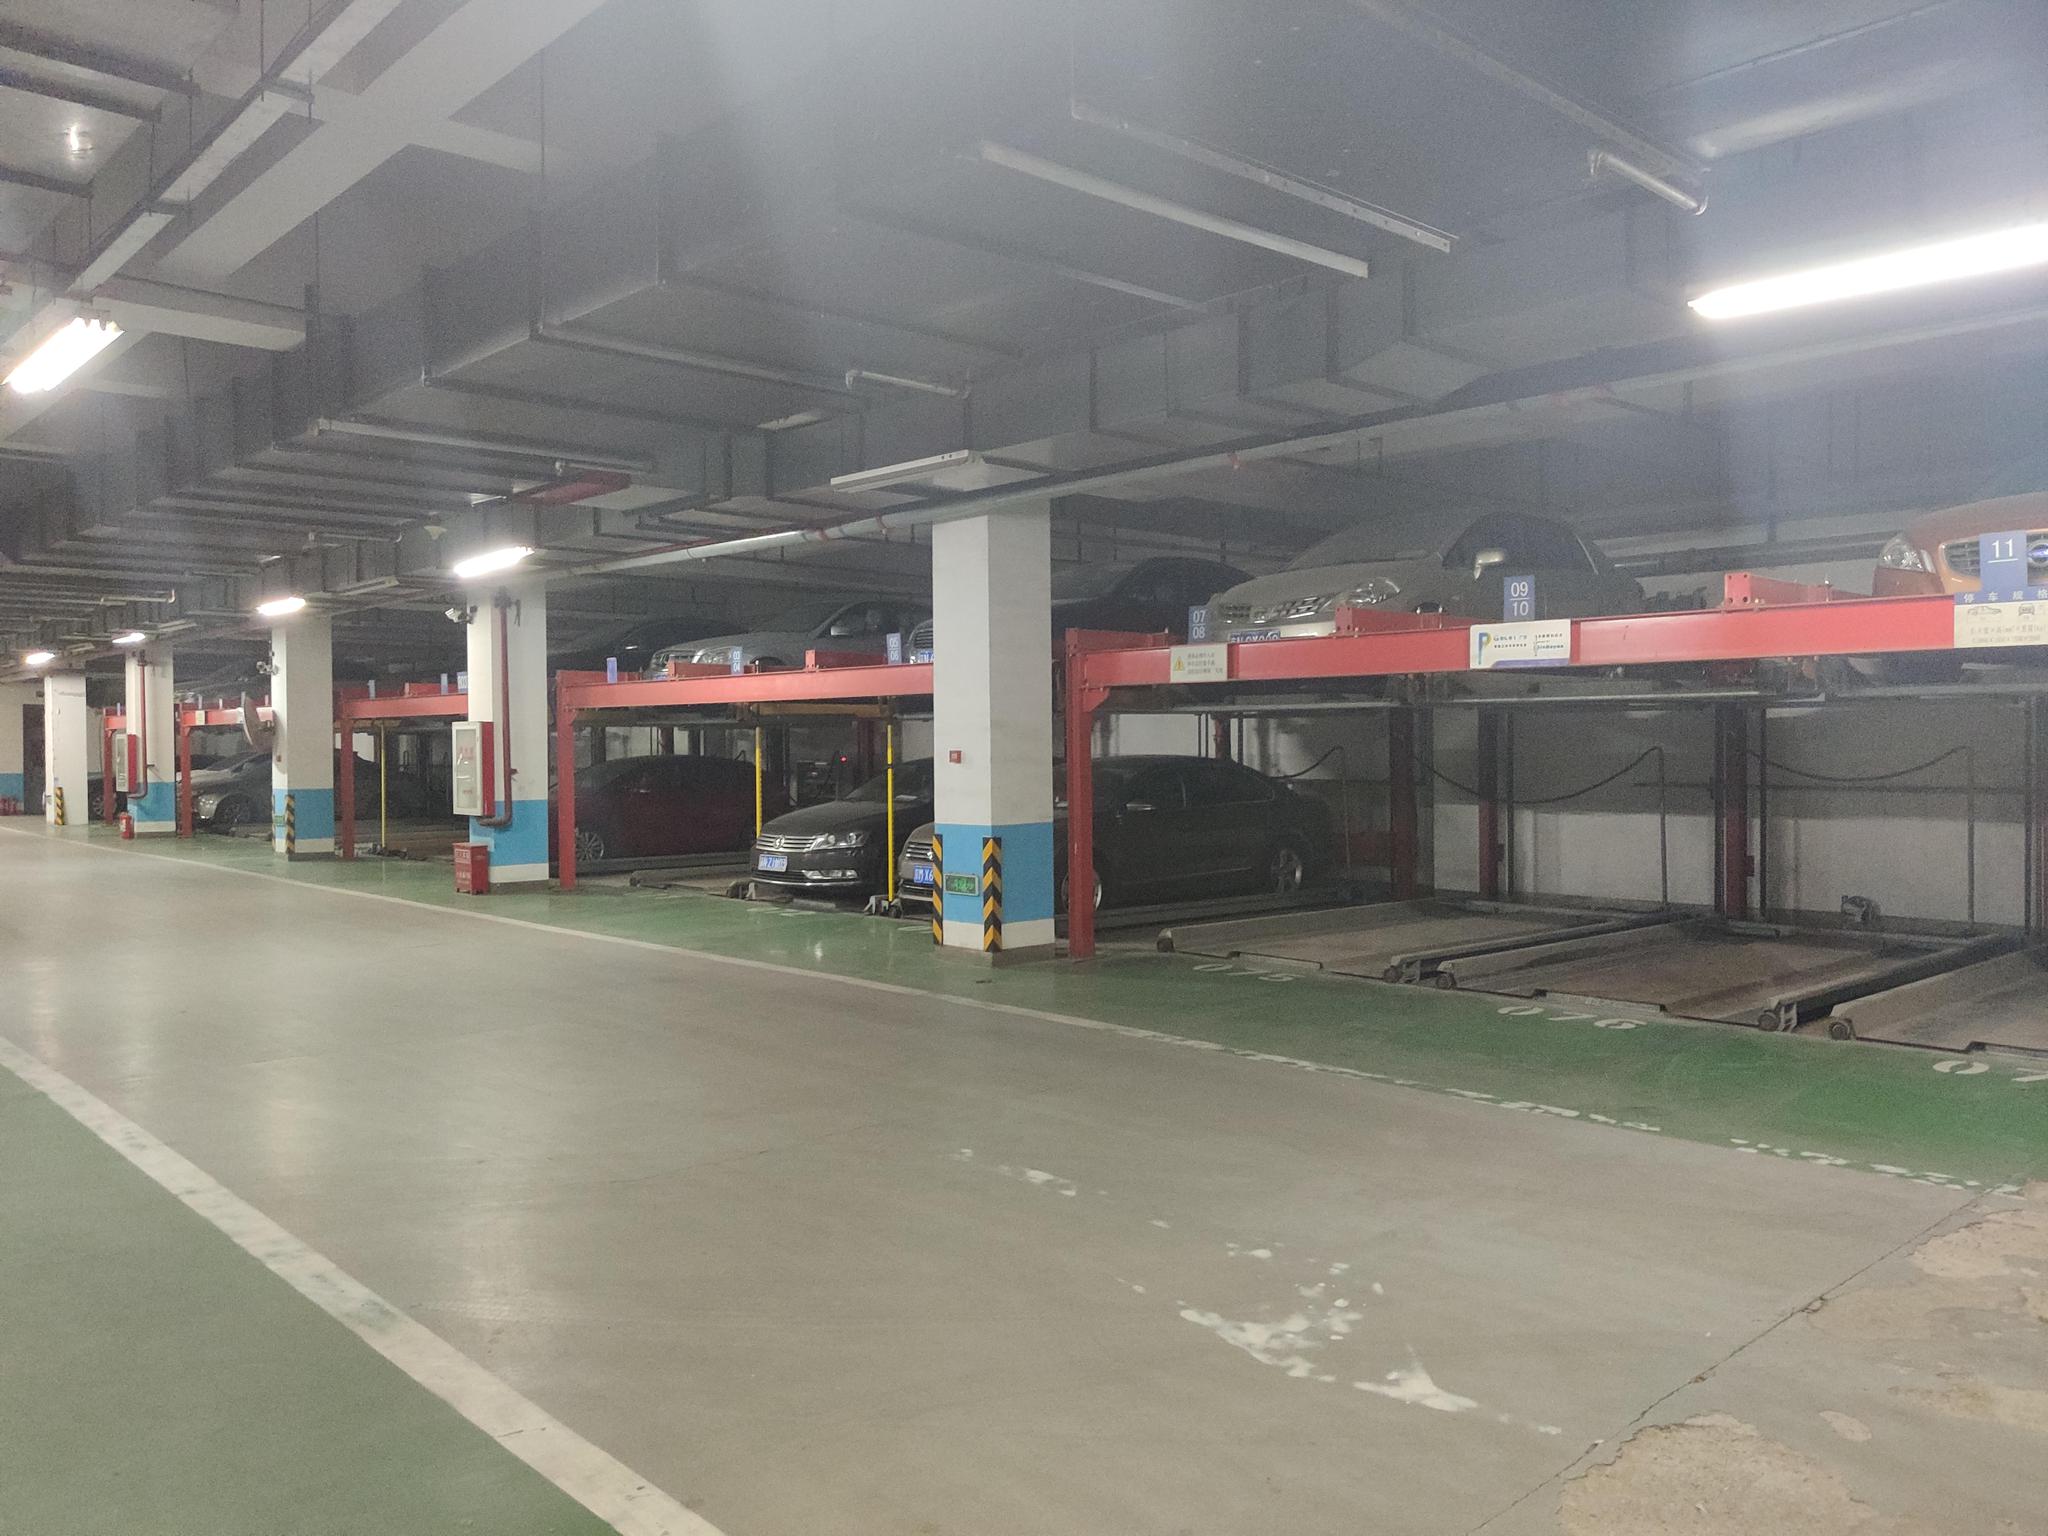 信和嘉园小区地下一层停车场仍为两层机械停车设备。摄影/新京报见习记者 周博华